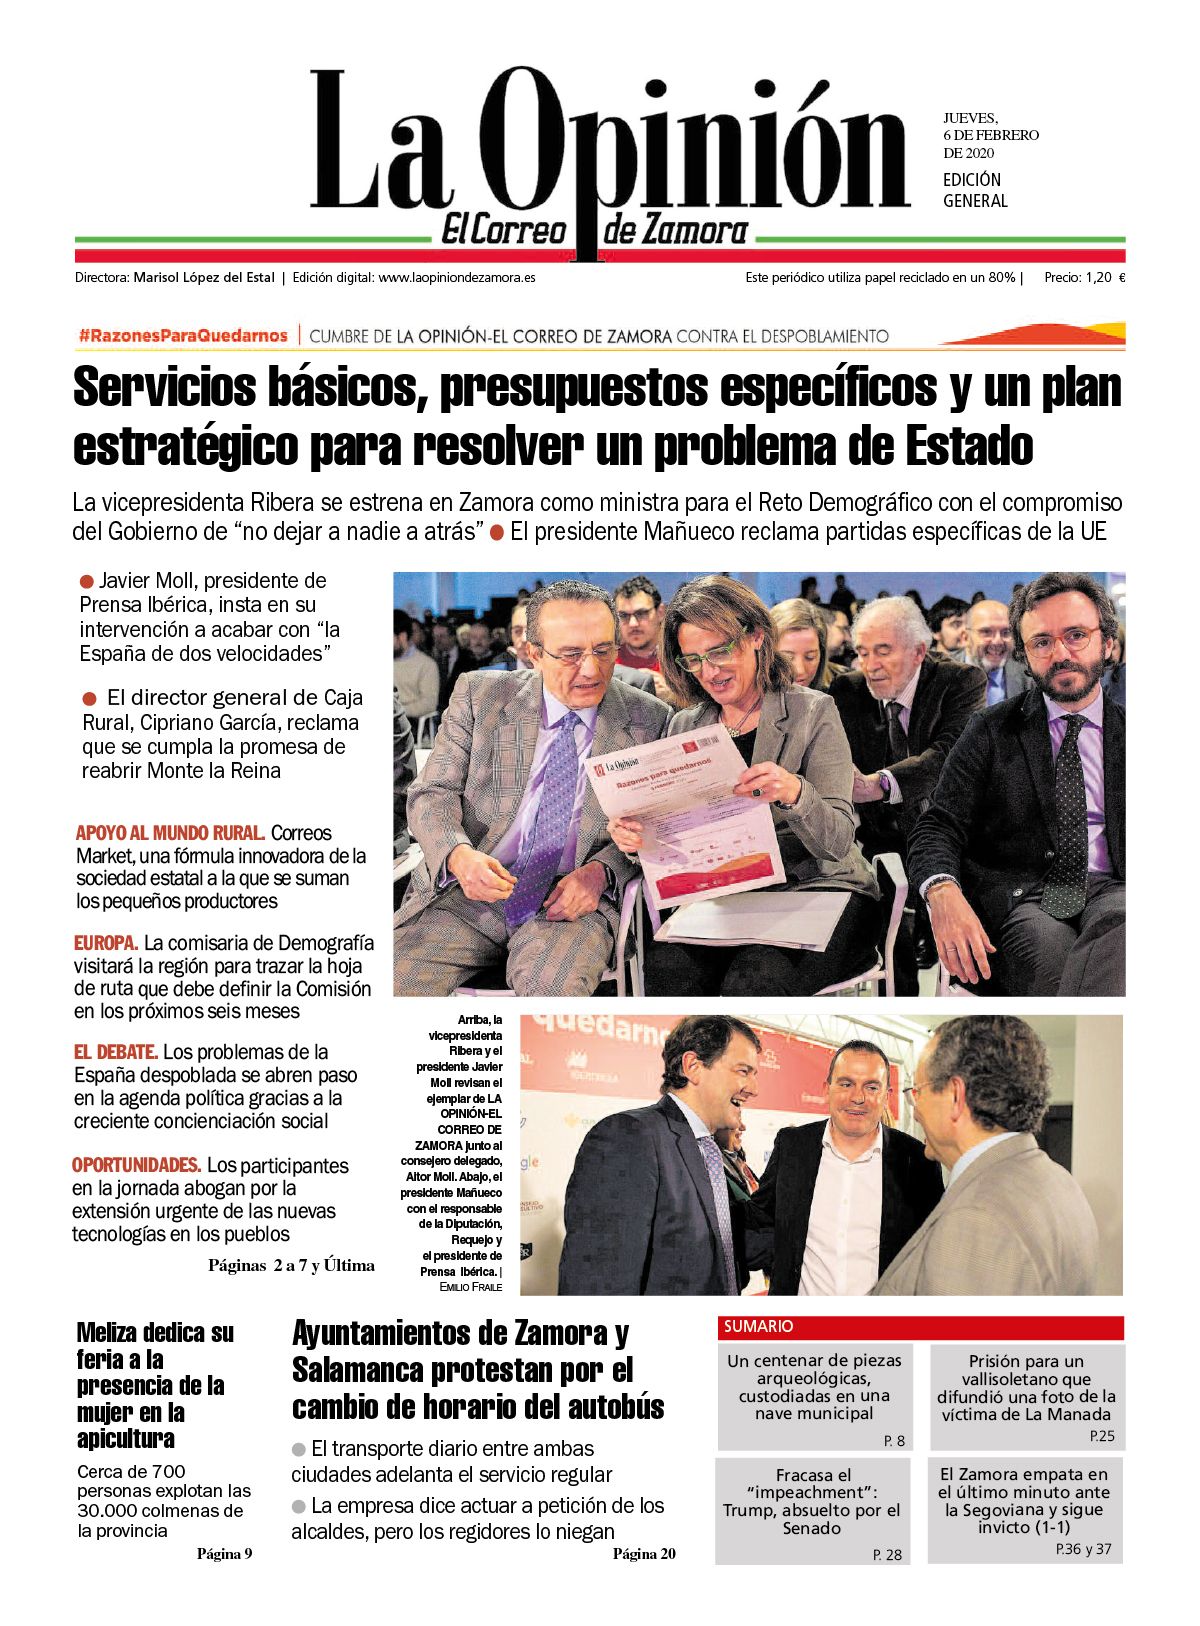 La Opinión-El Correo de Zamora, 6 de febrero de 2020. Cubre contra el despoblamiento